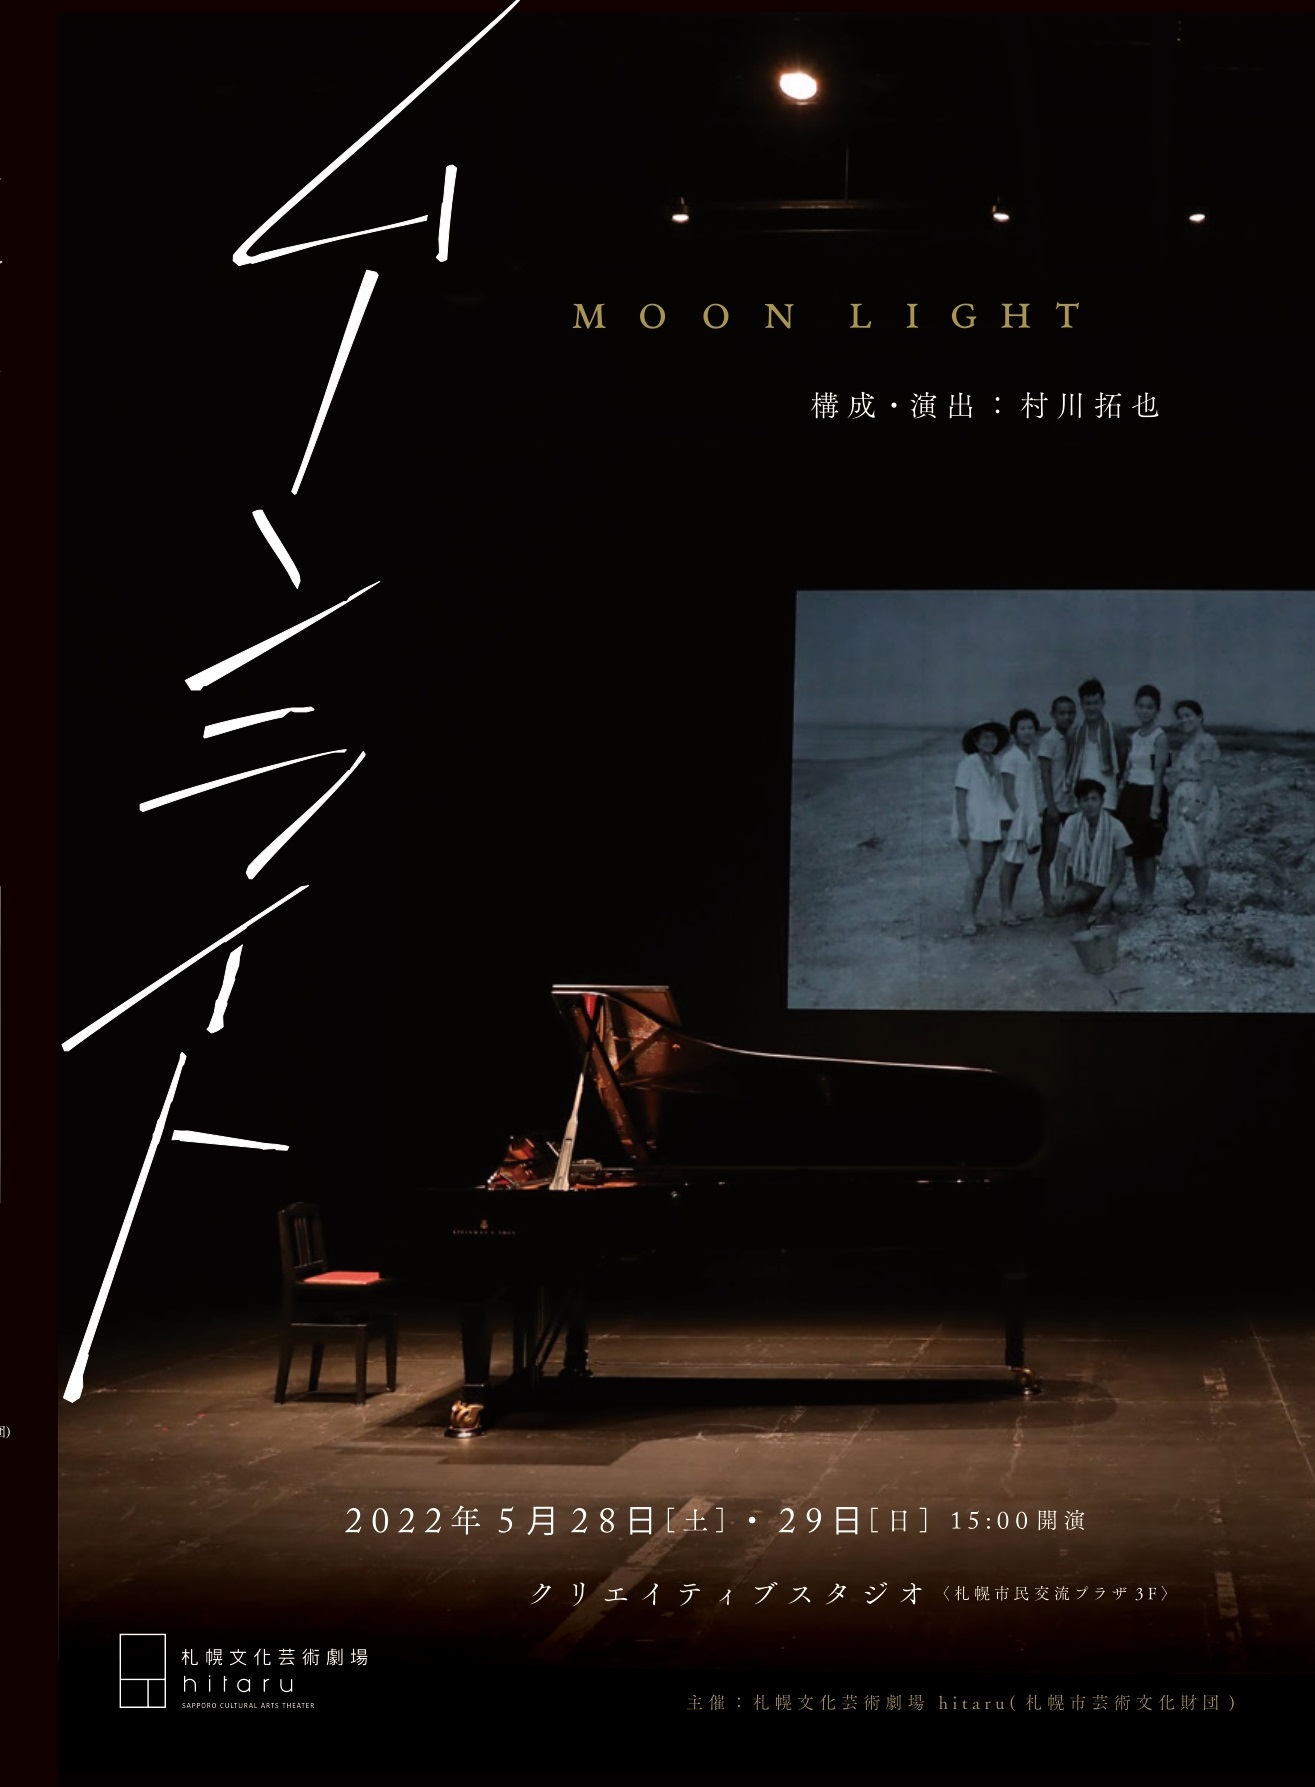 “Moonlight” by Takuya Murakawa (director, film artist) image